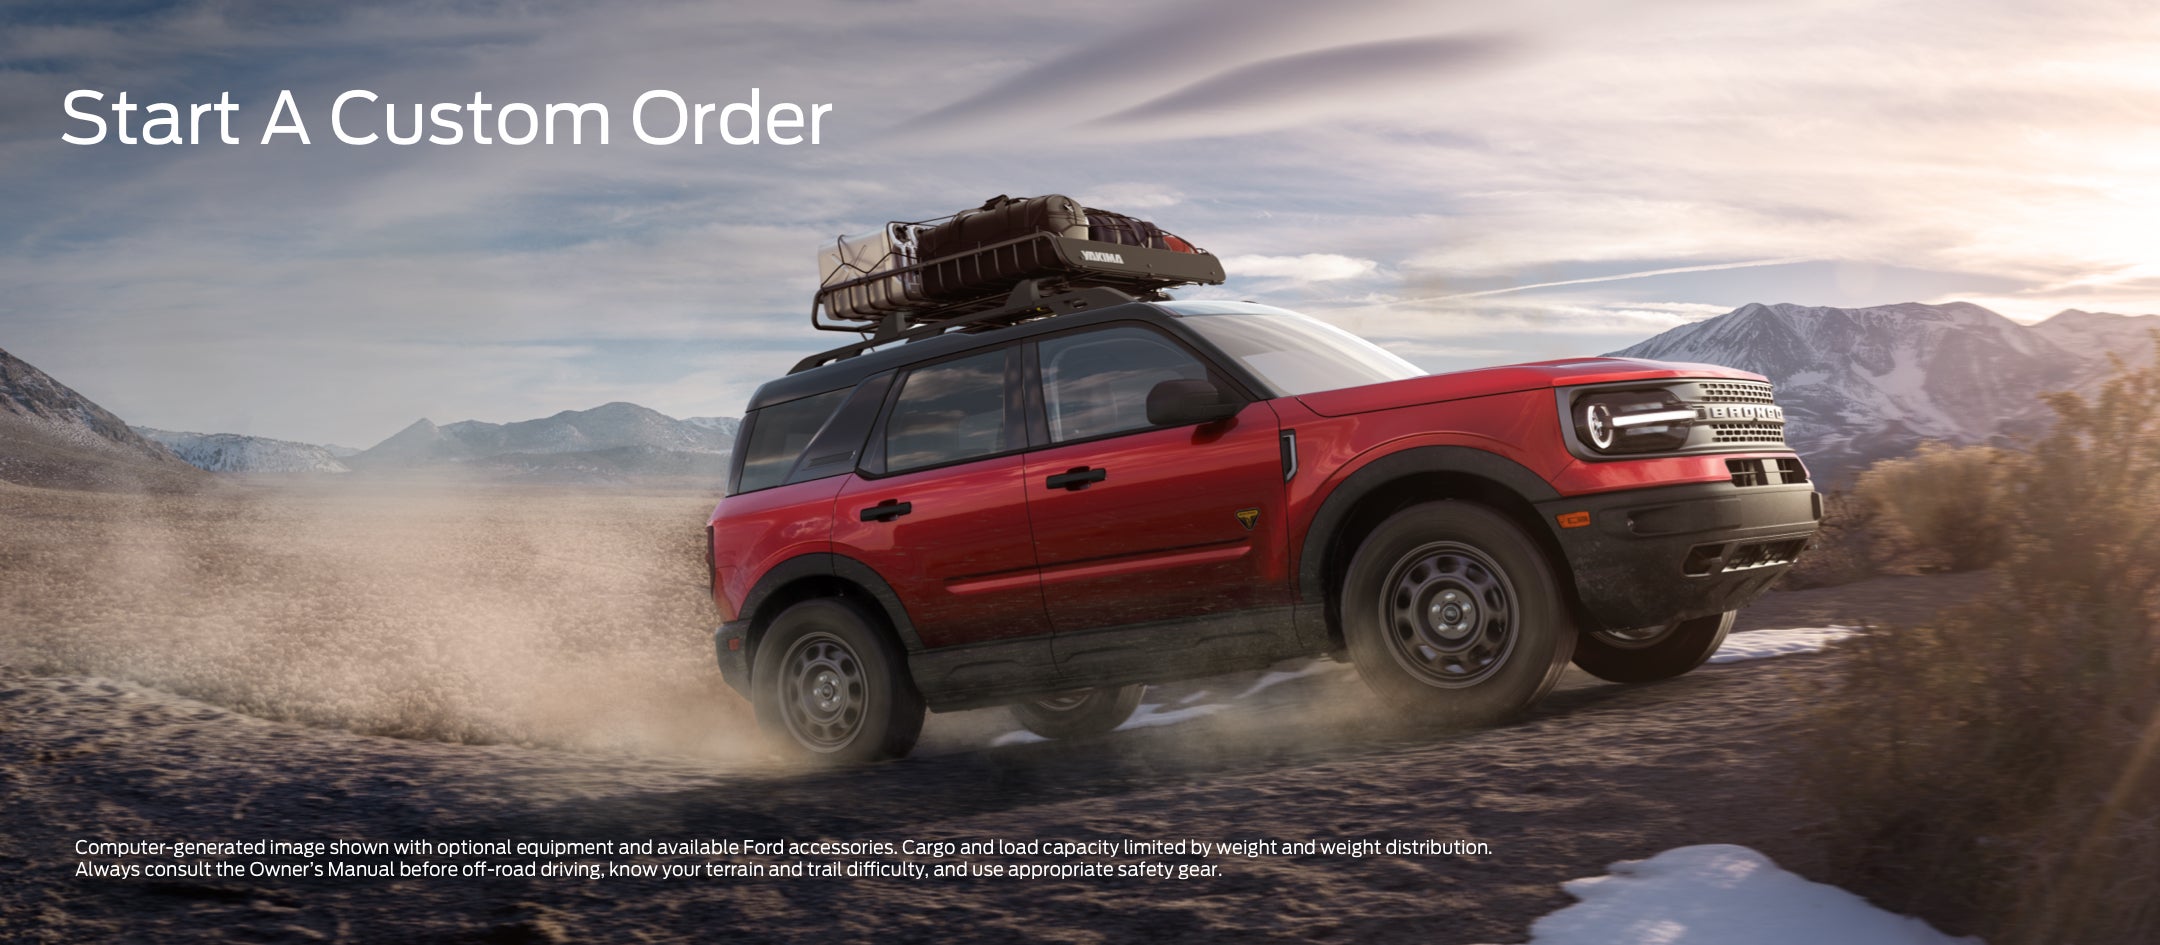 Start a custom order | Asheboro Ford in Asheboro NC